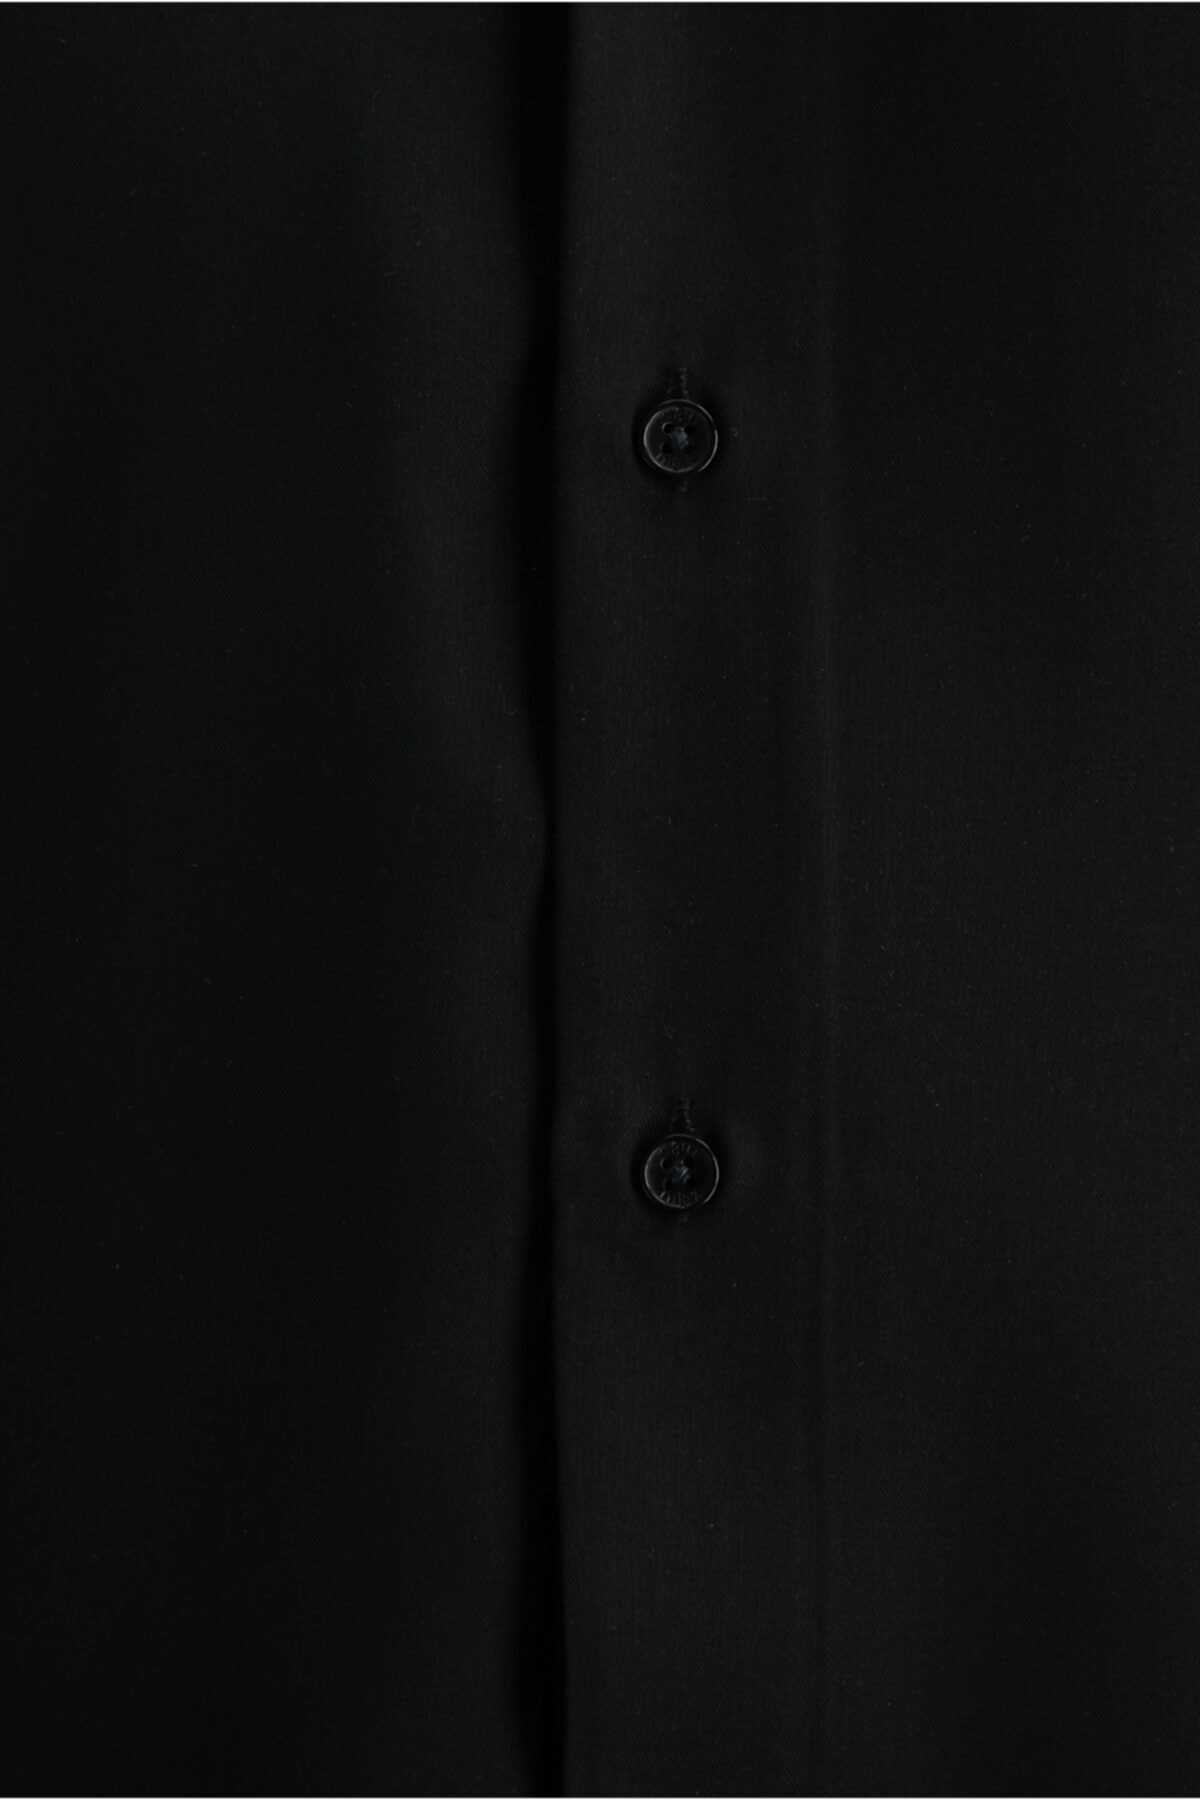 خرید انلاین پیراهن مجلسی مردانه ترک برند کیگیلی رنگ مشکی کد ty221185583